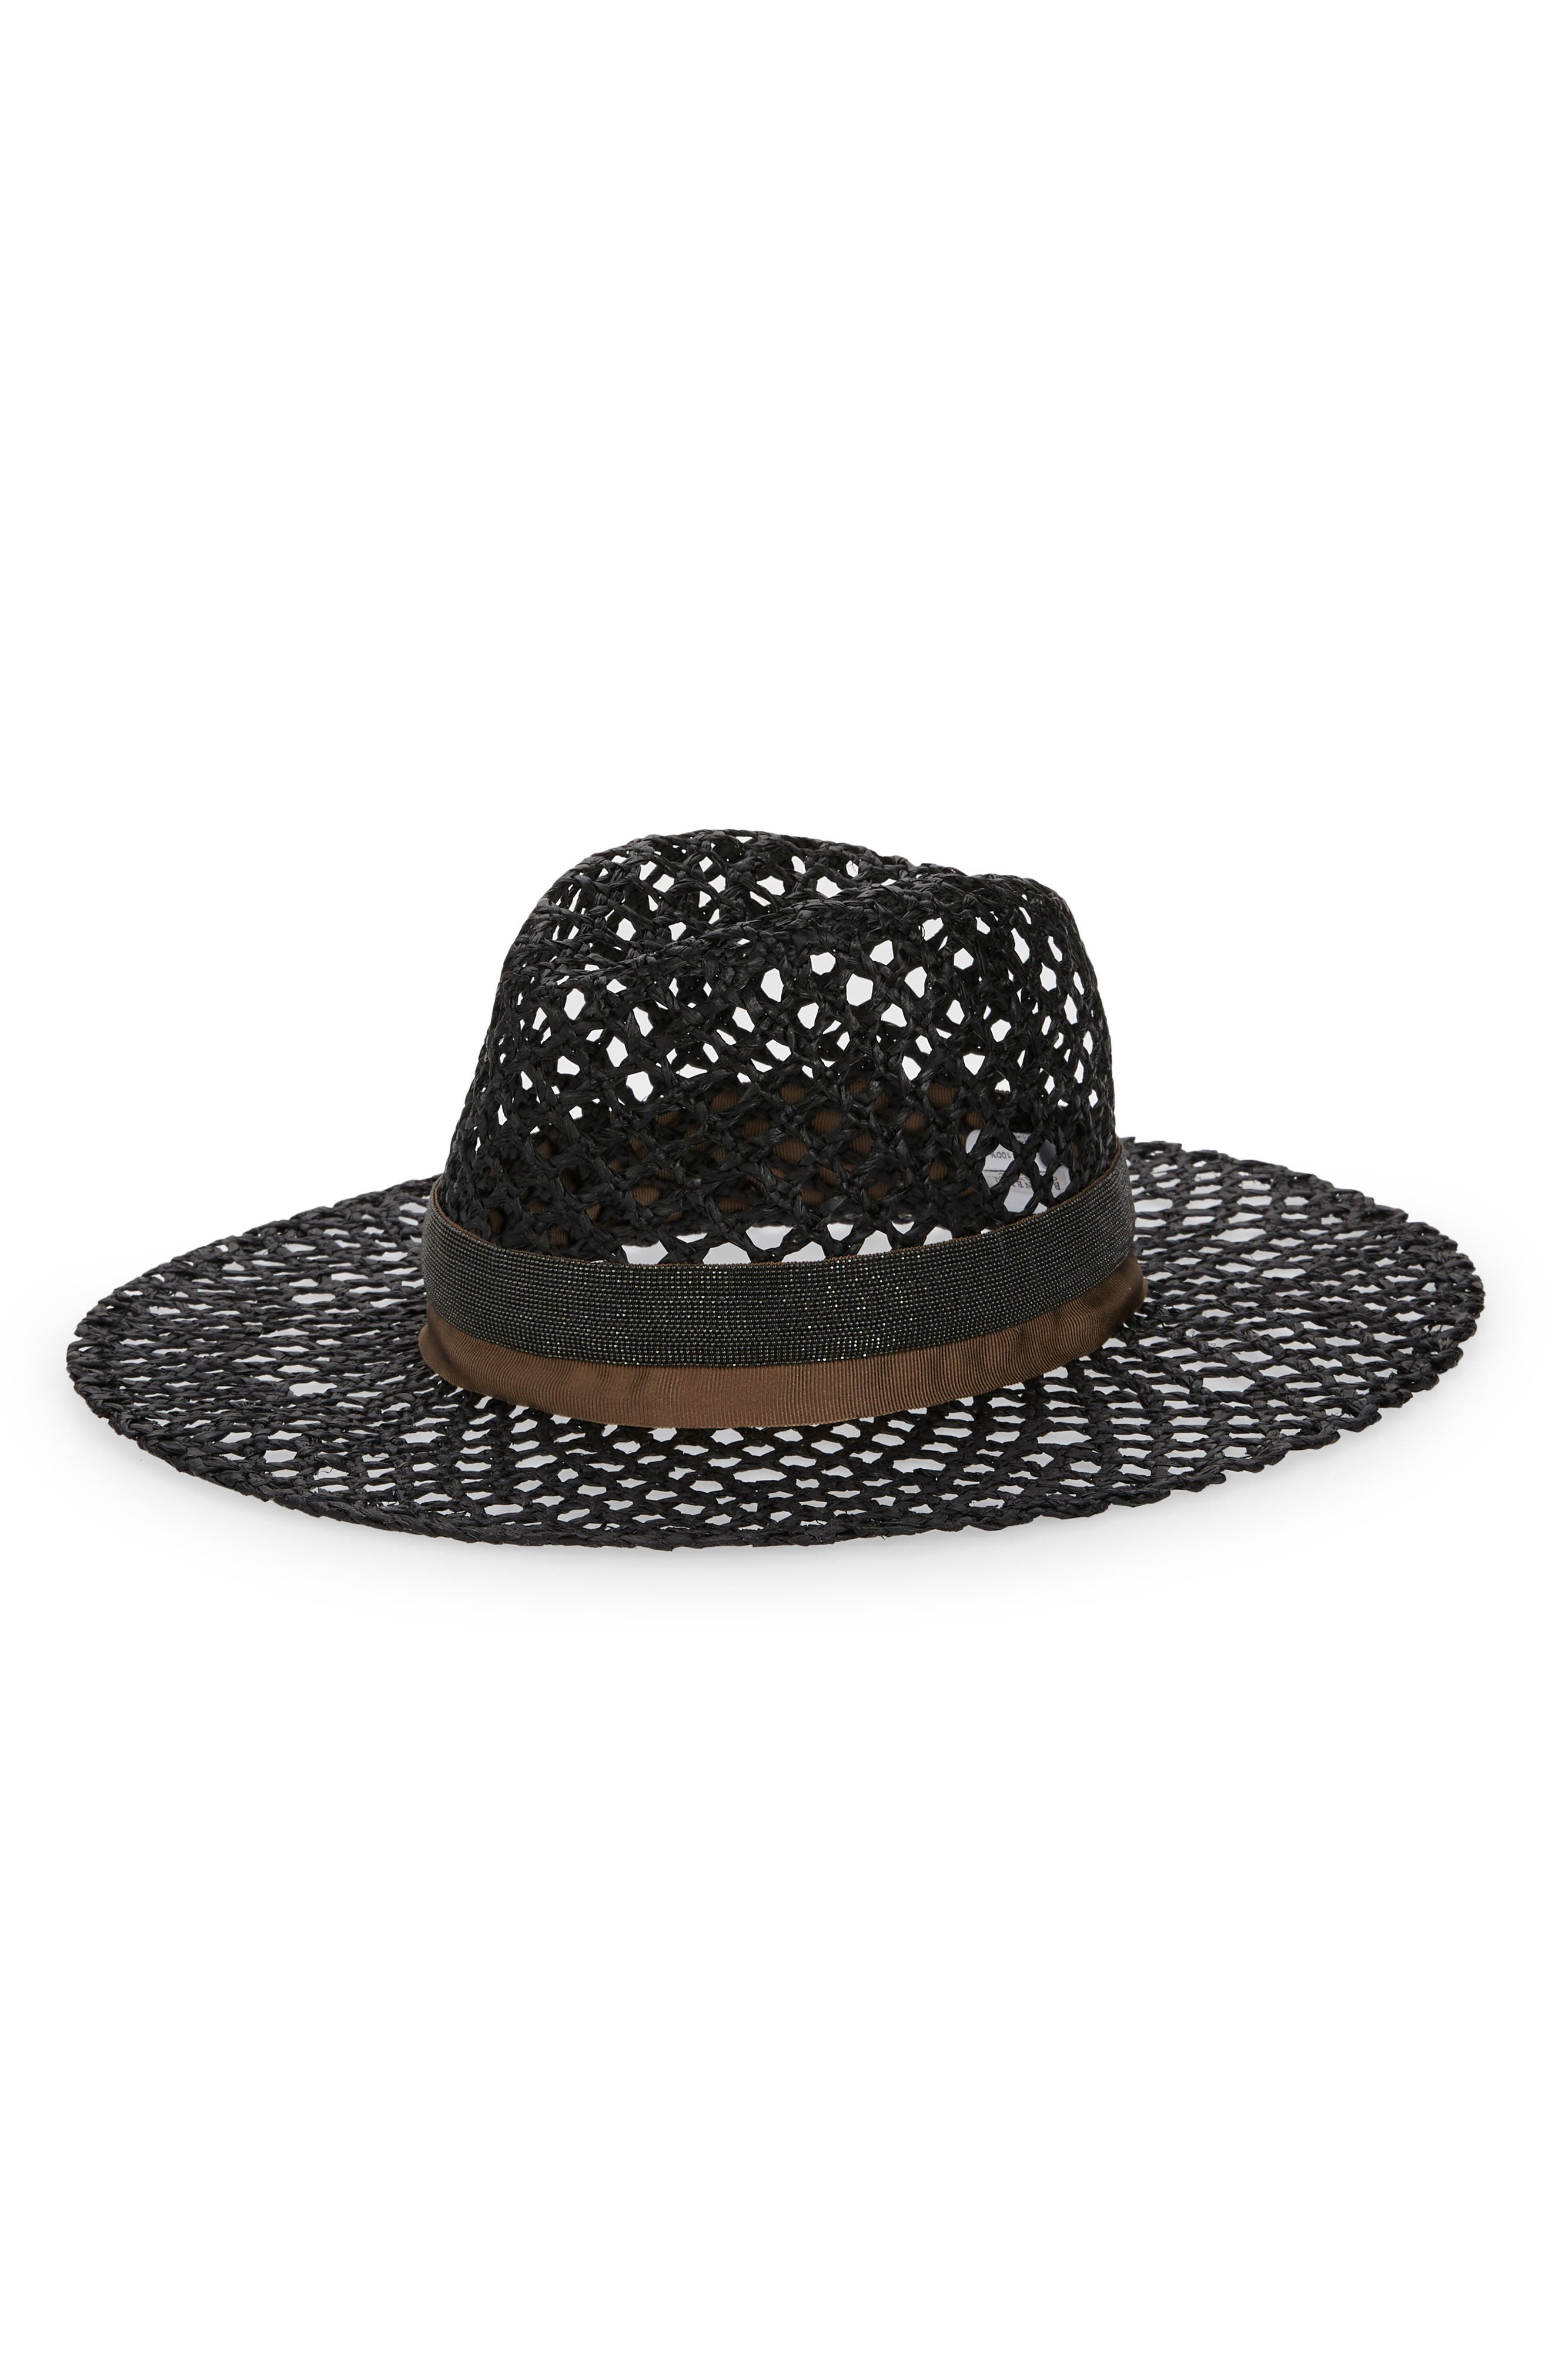 Brunello Cucinelli Monili Trim Woven Panama Hat in Black